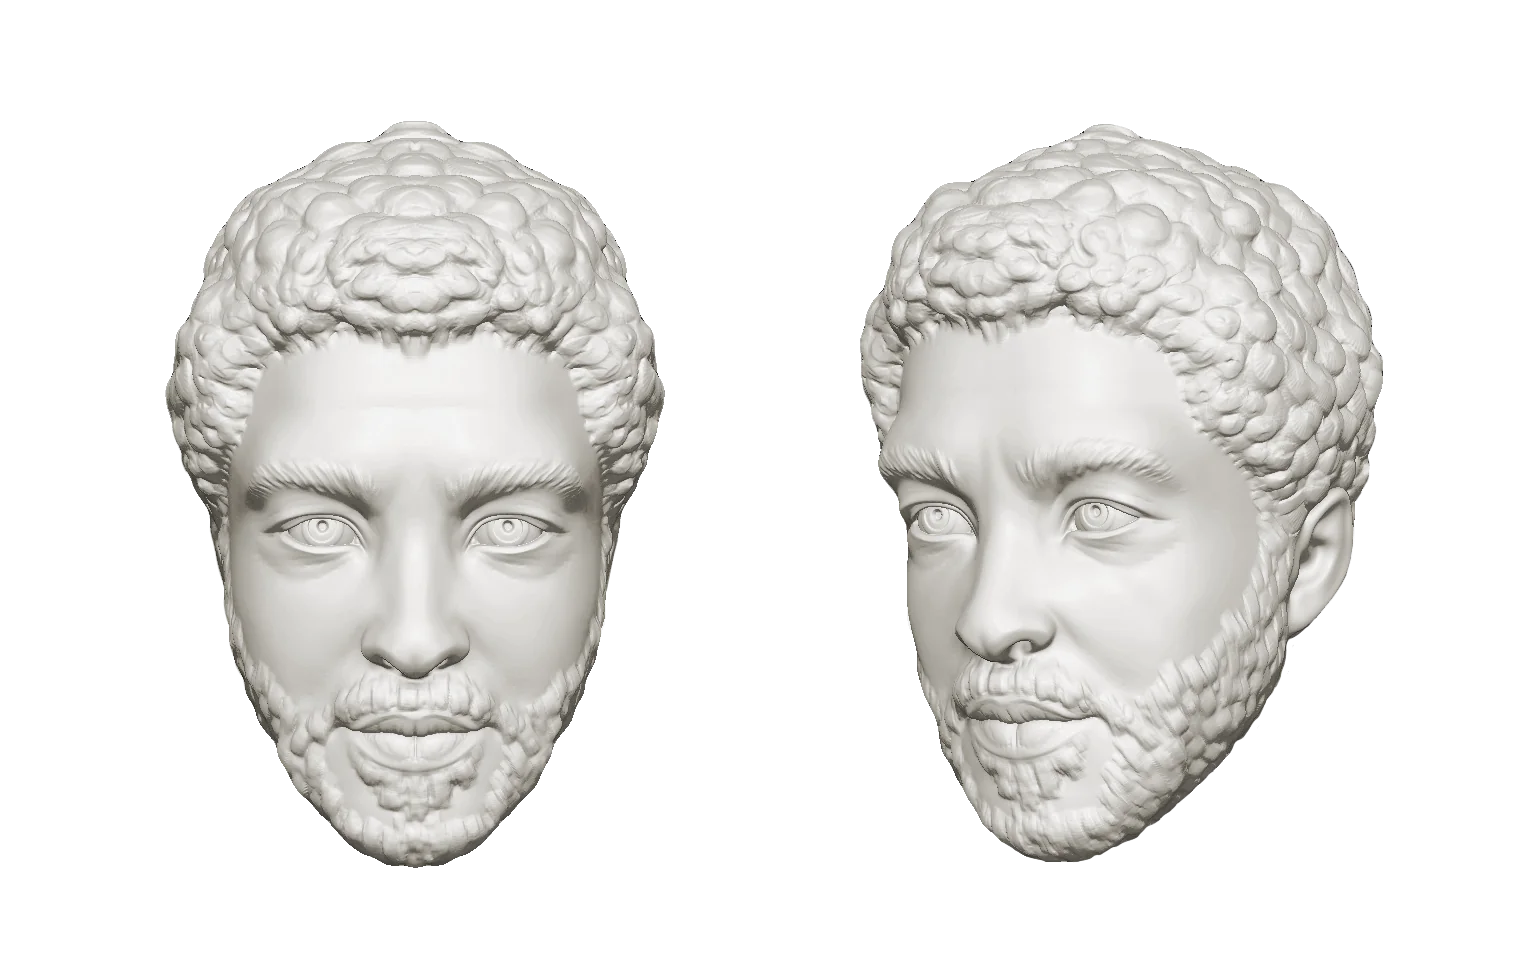 3D sculpting service - Professional digital sculpting - 3D printed bust